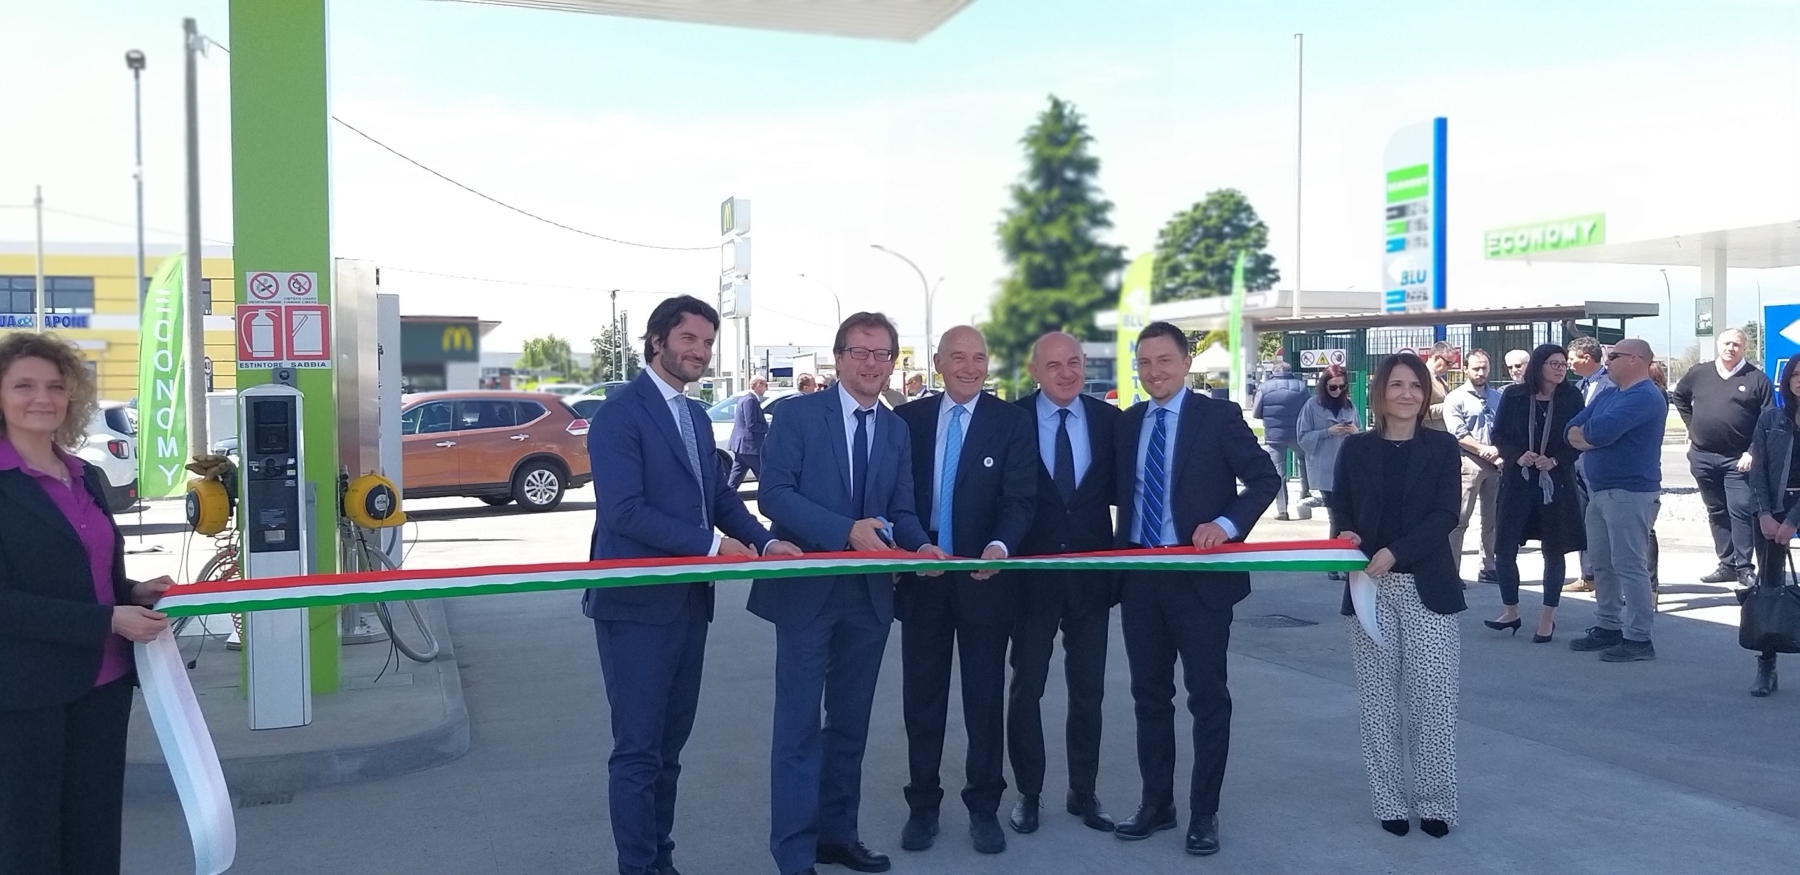 Una nuova stazione Lng in Piemonte, Scania consegna dieci nuovi mezzi